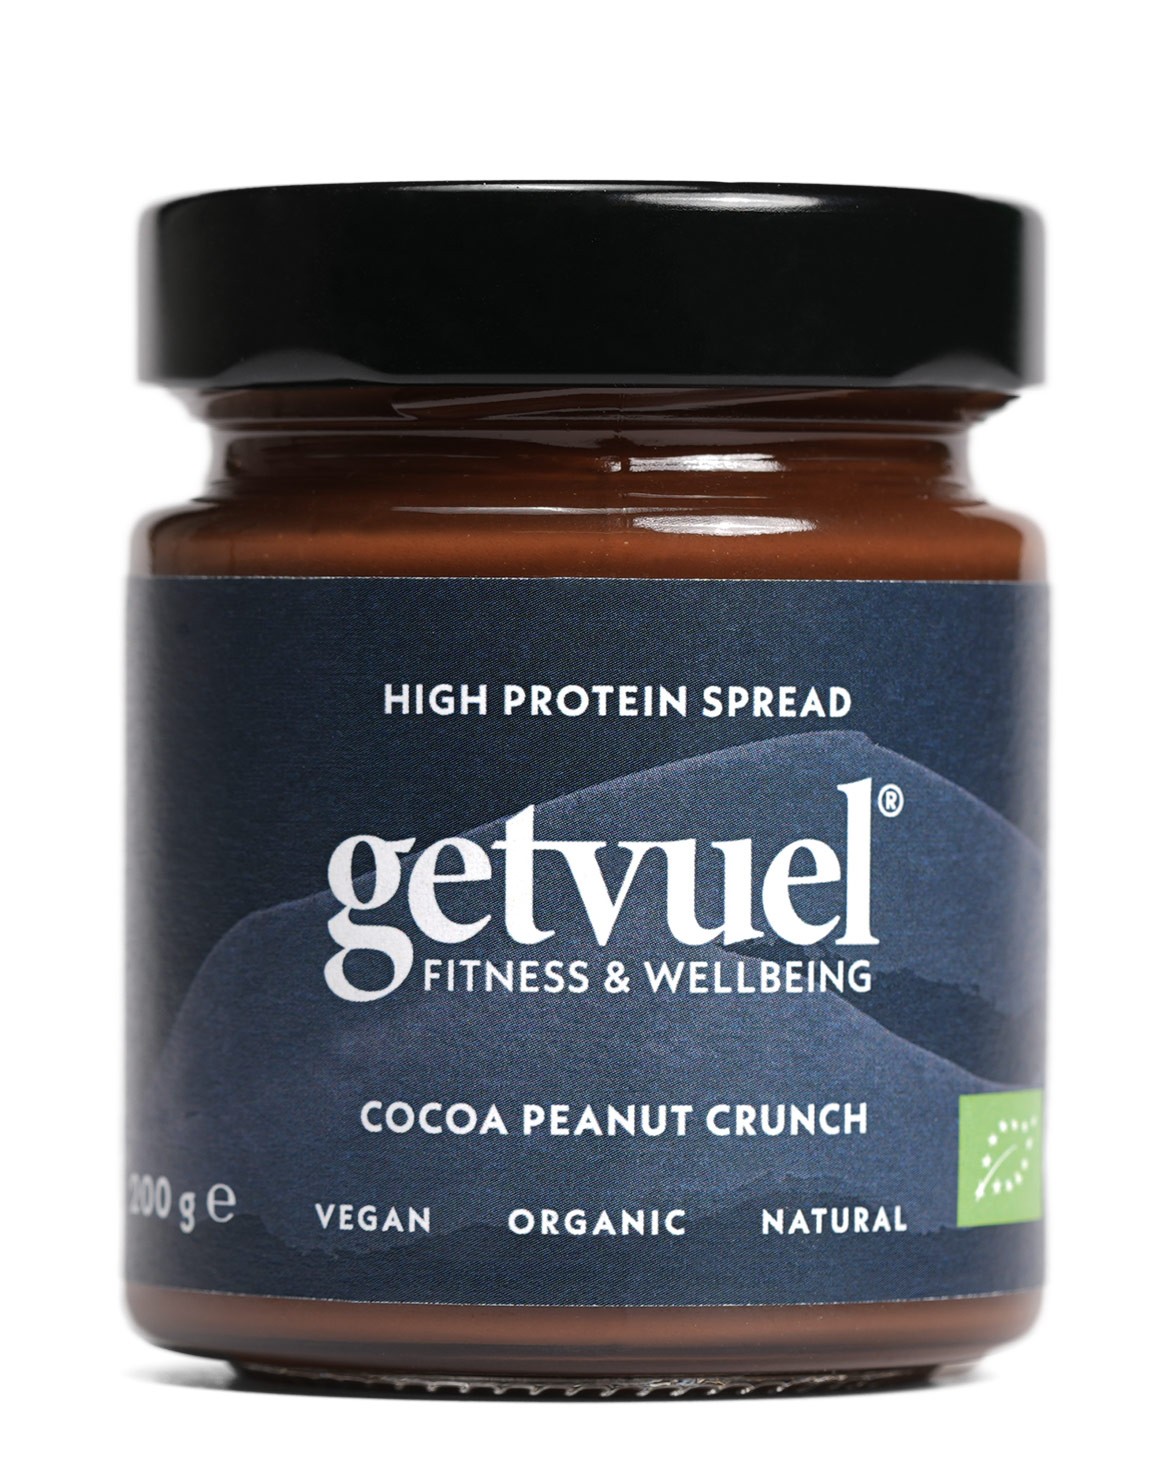 High Protein Cocoa Peanut Crunch Spread